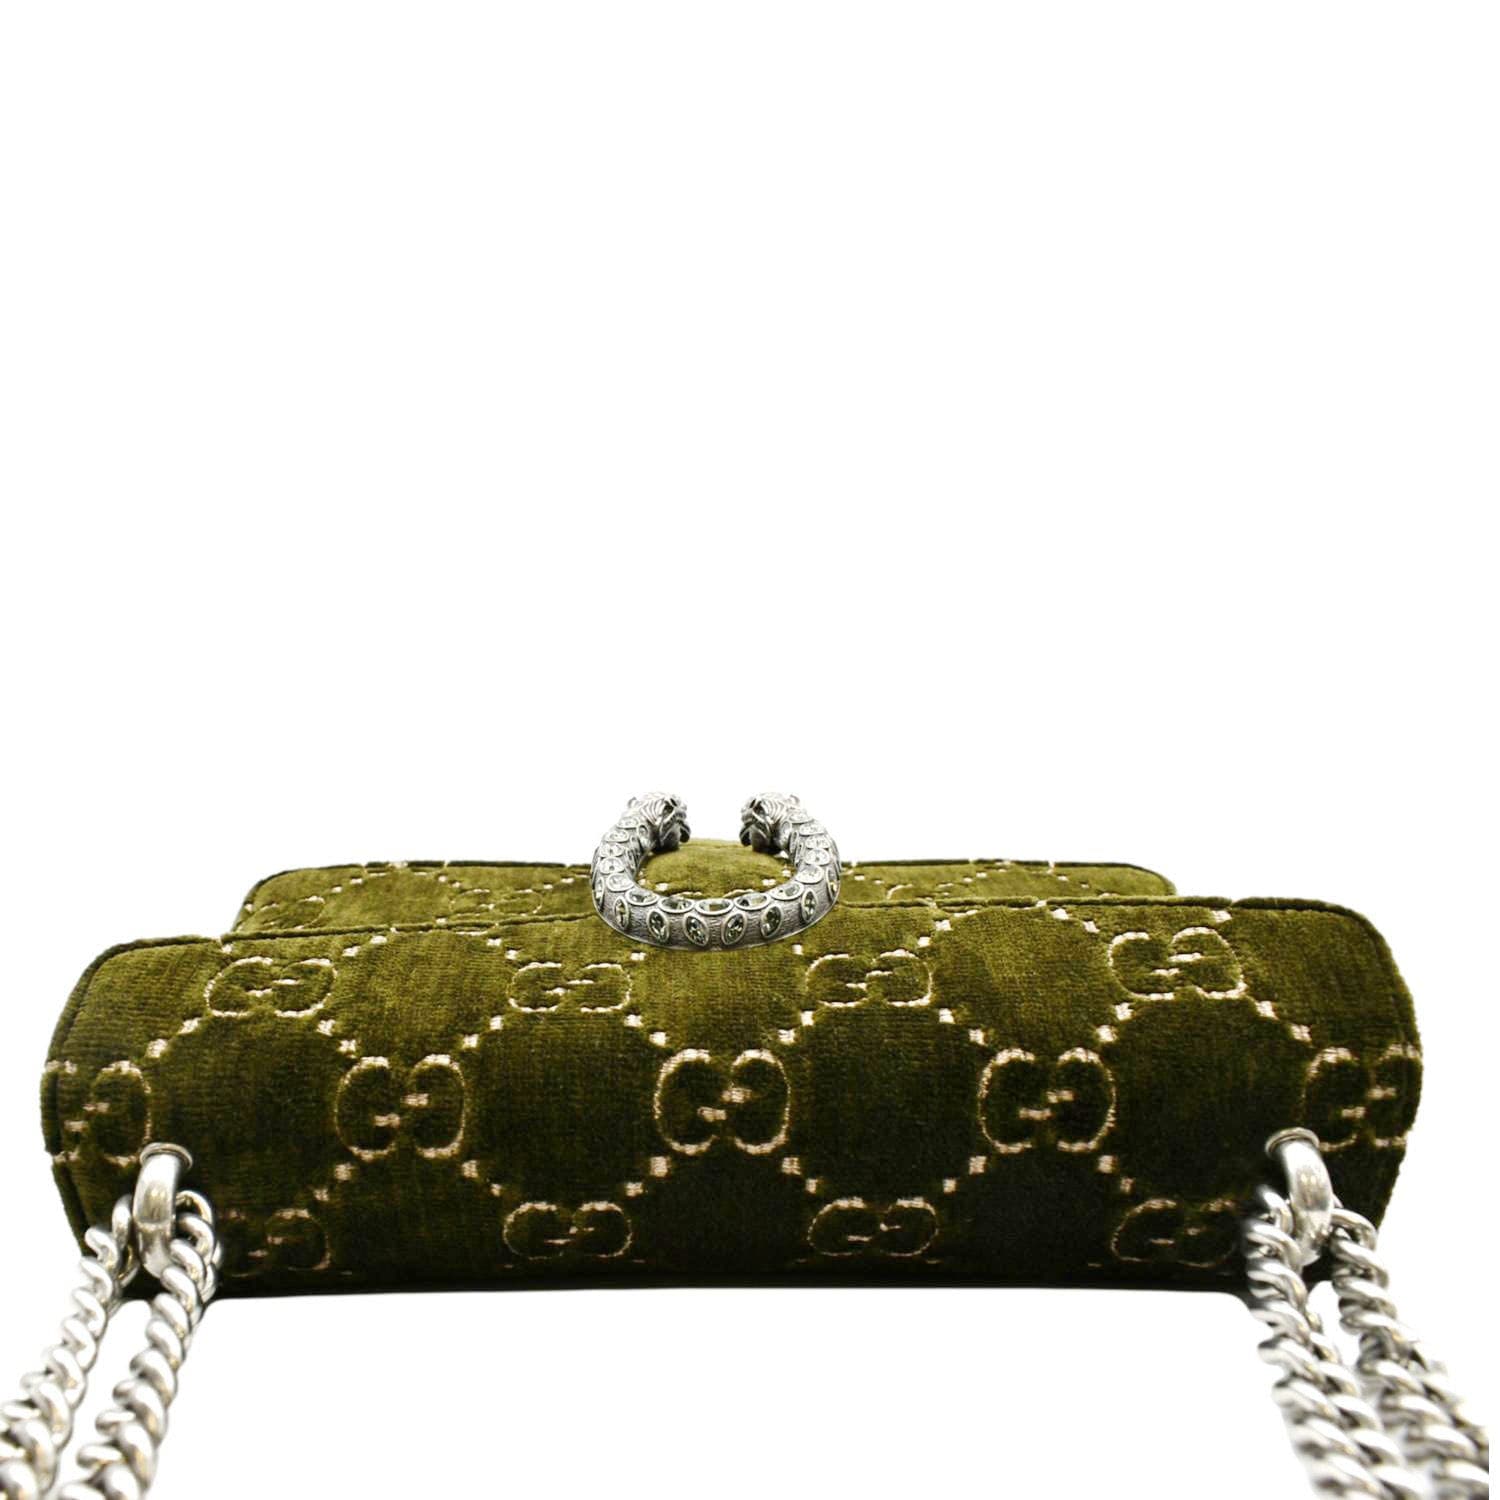 GUCCI Dionysus Velvet GG Handbag in Dark Green